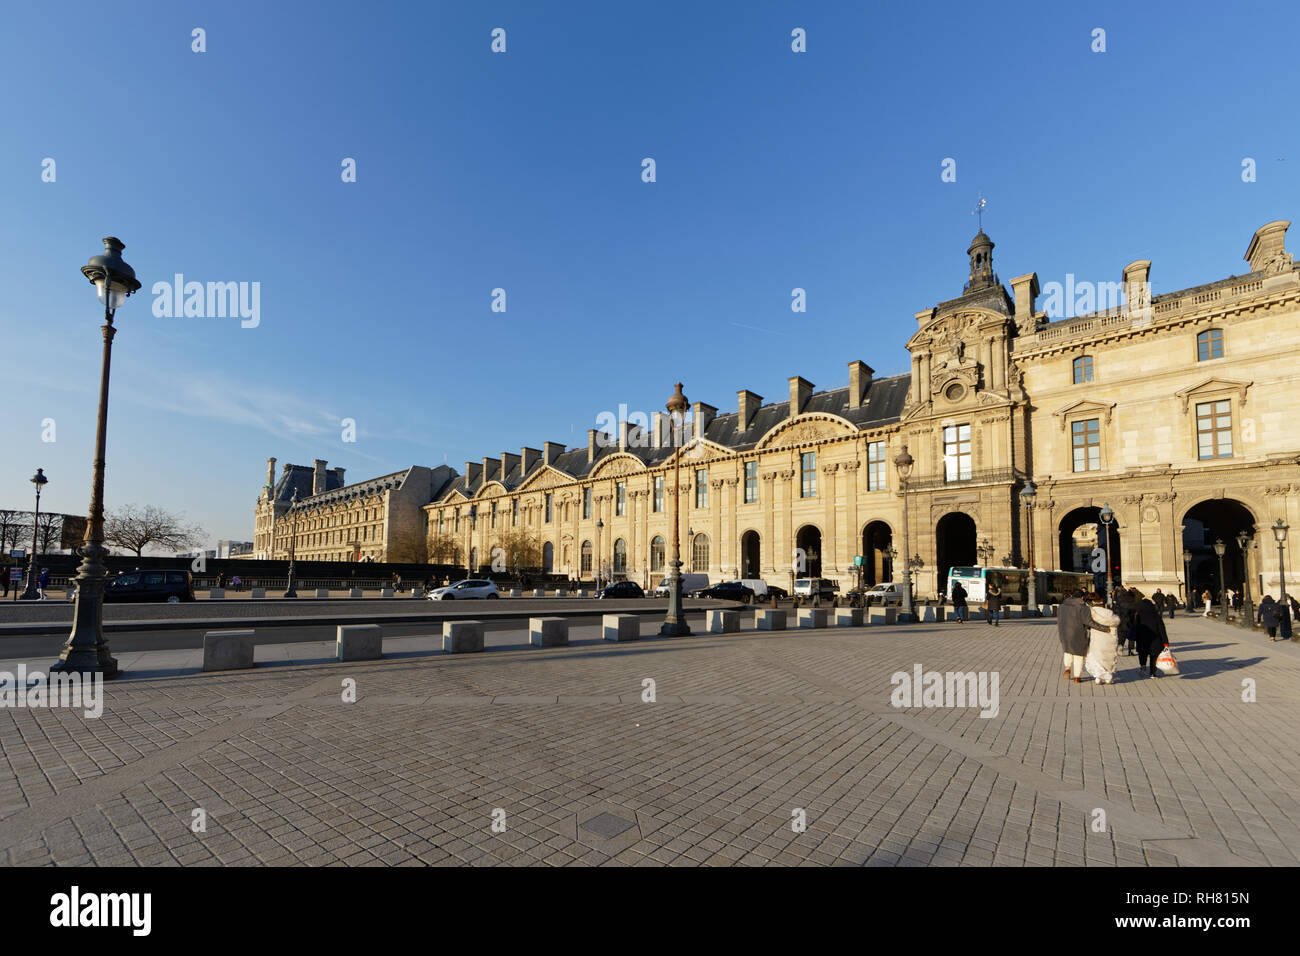 Palais du Louvre - Paris, France Stock Photo